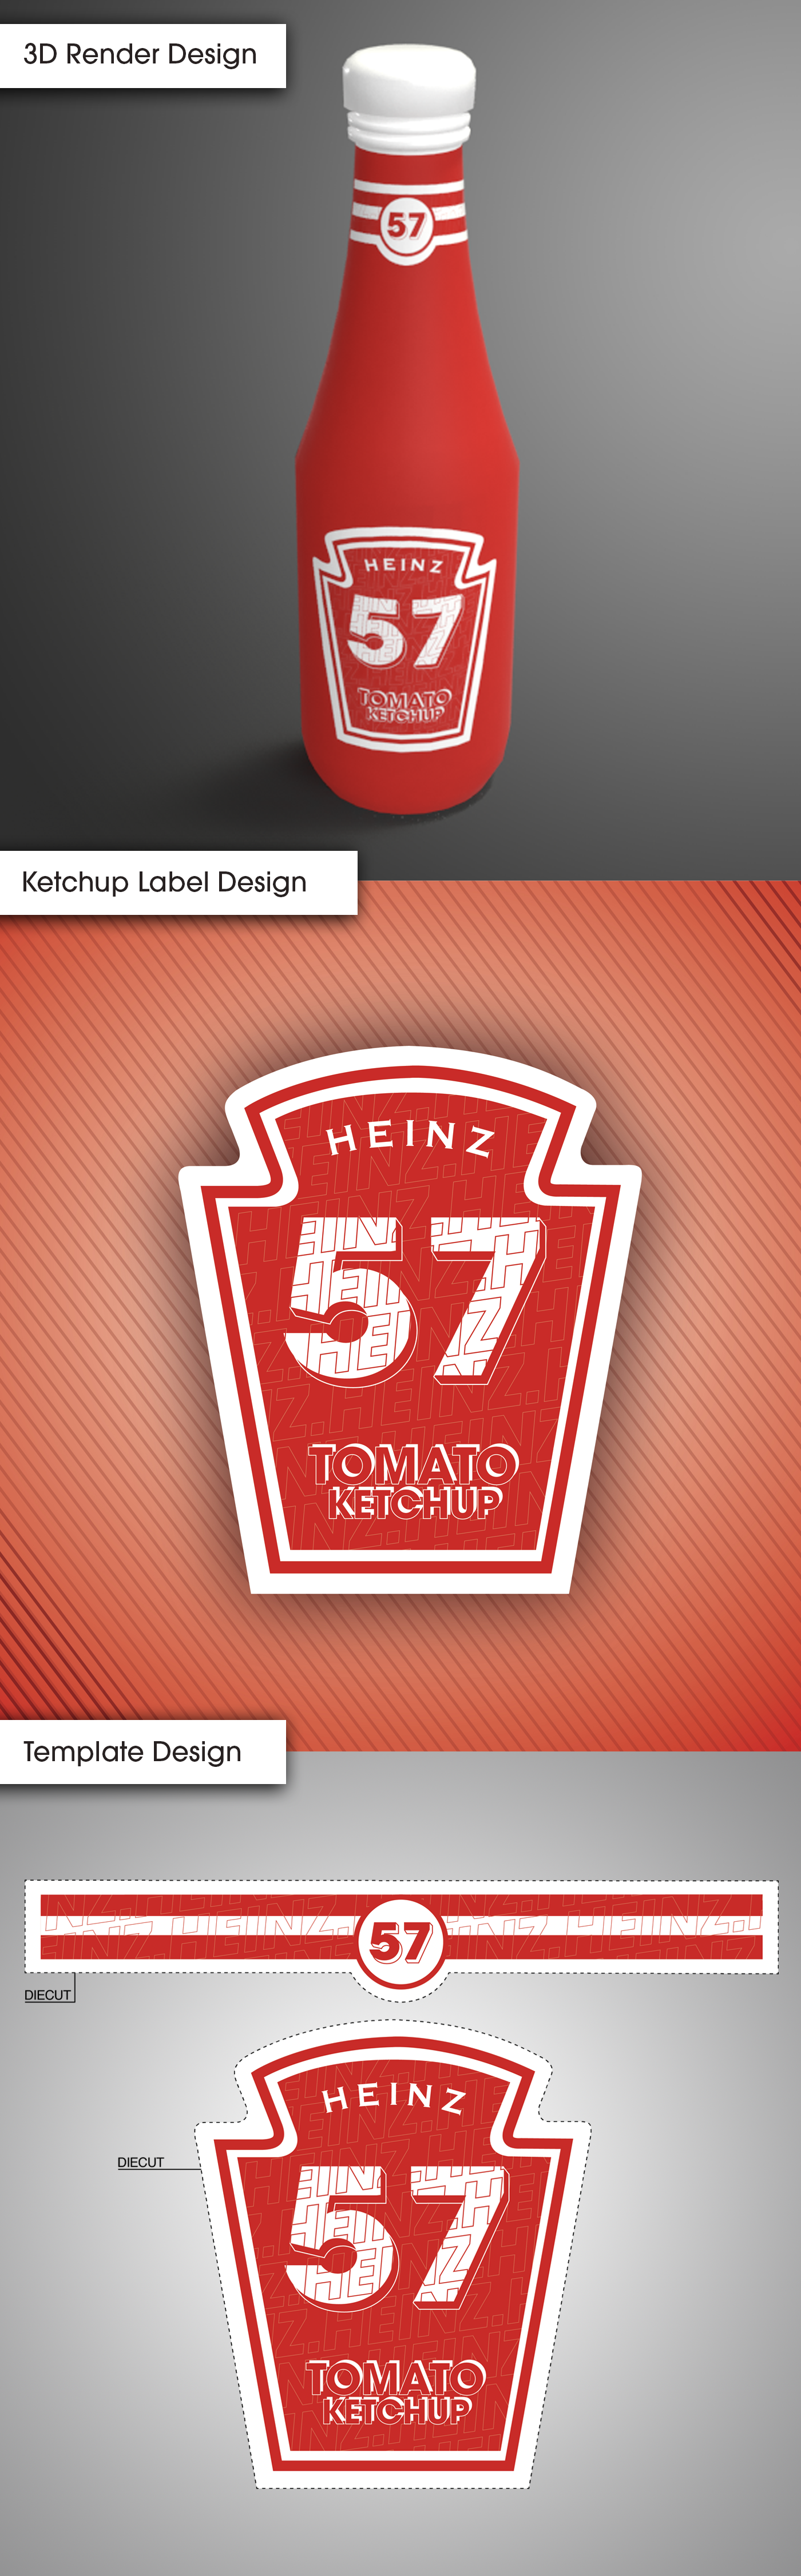 Heinz Ketchup Label Design  22D Render  Branding on Behance With Heinz Label Template